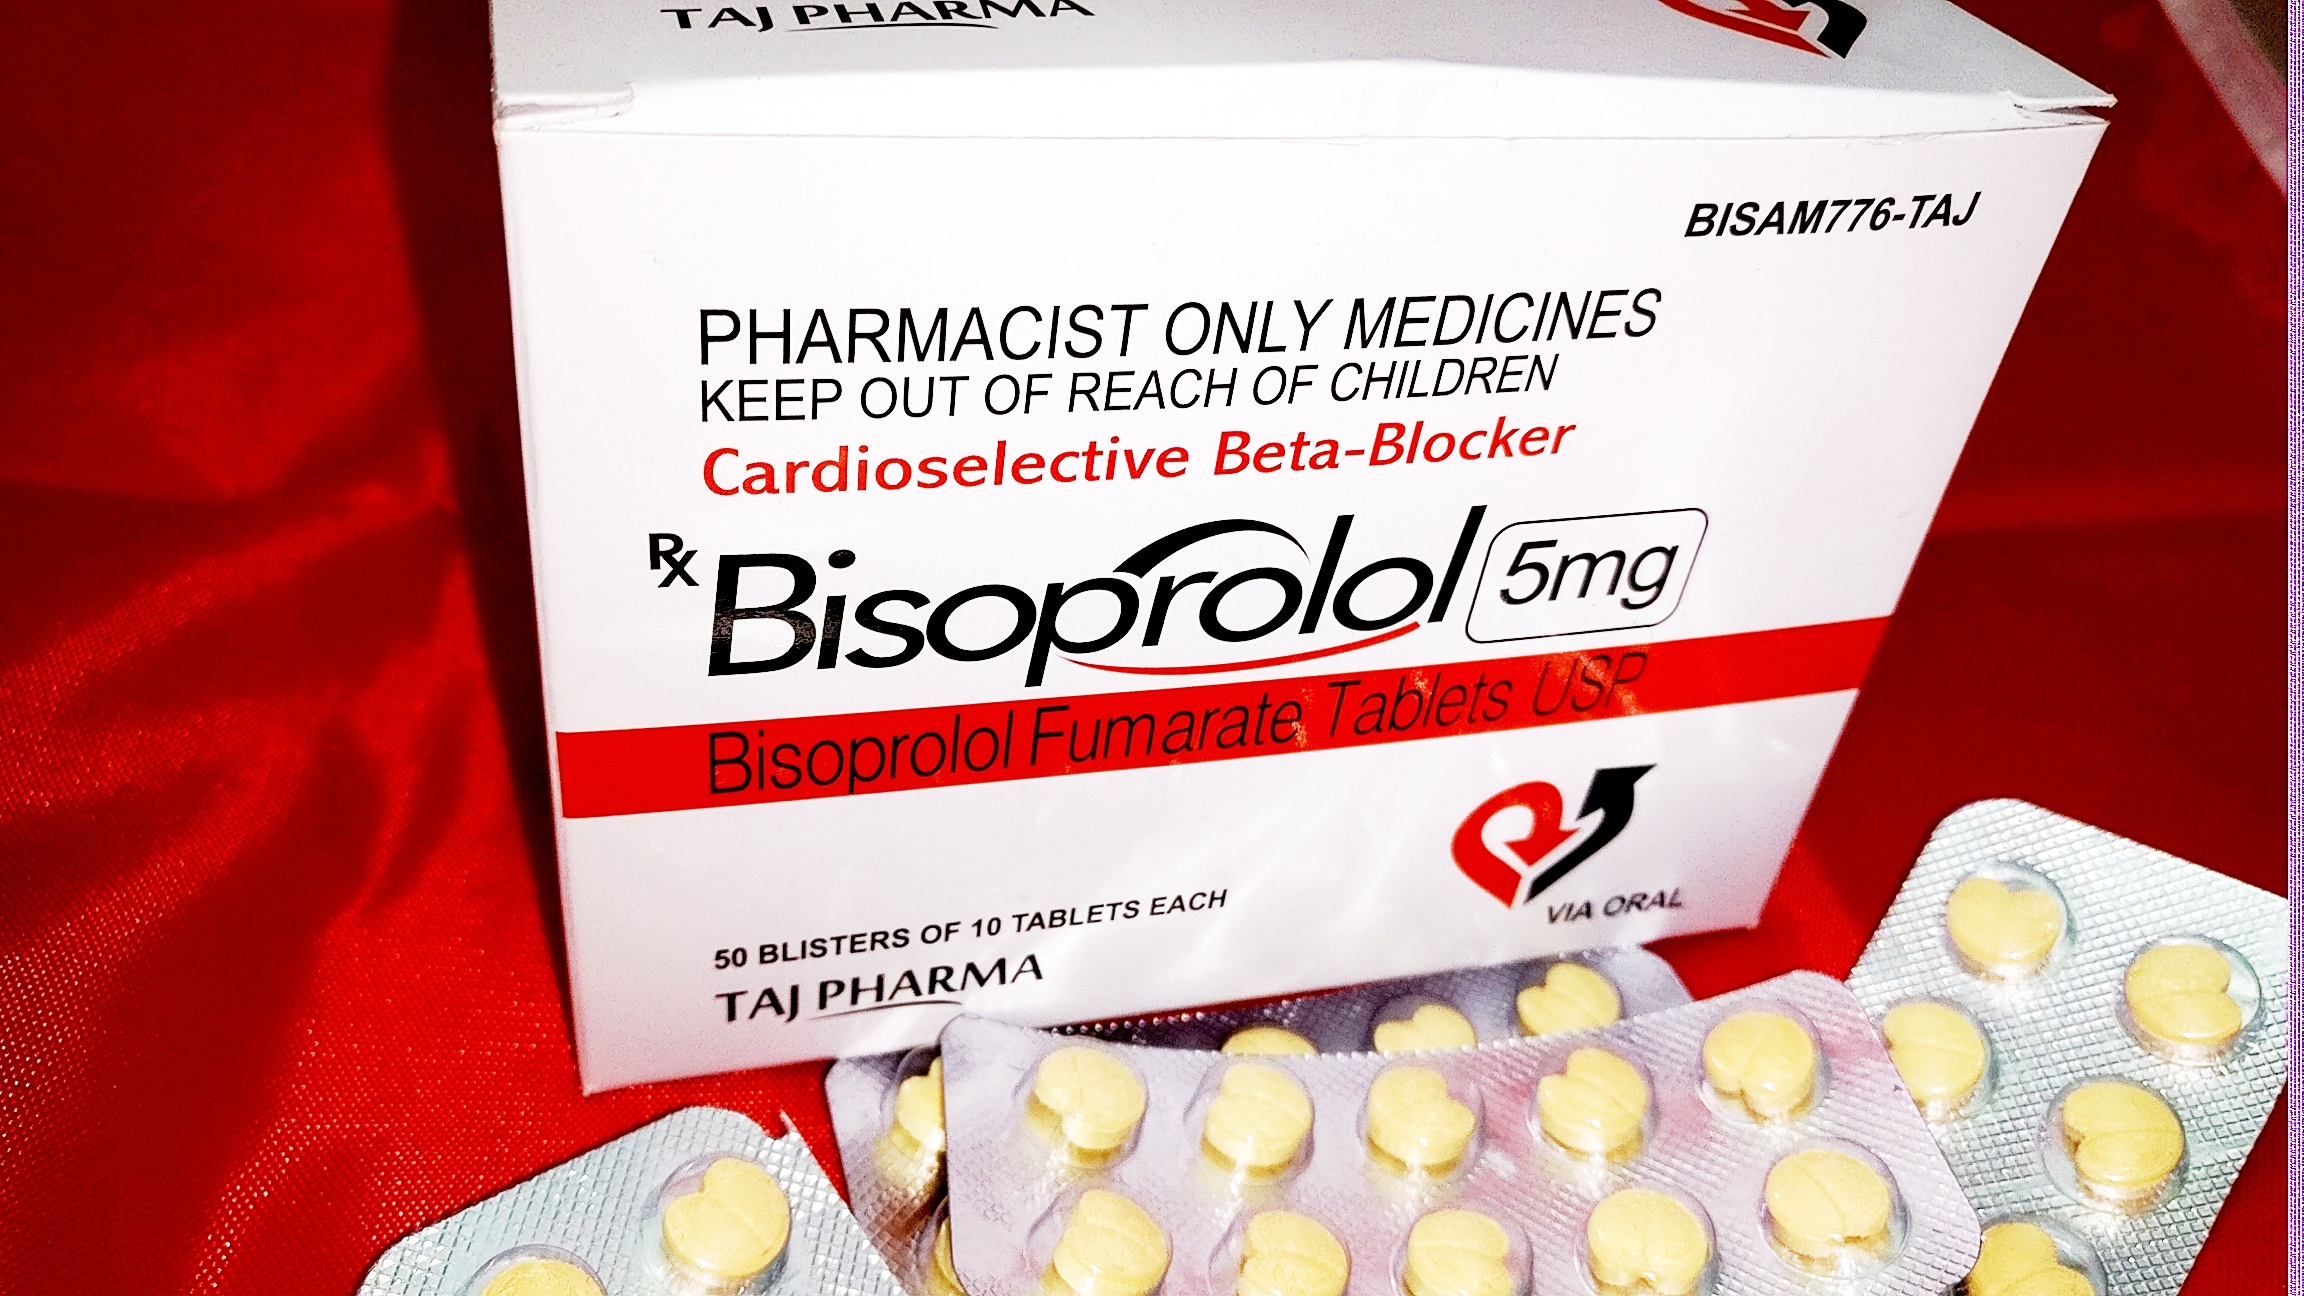 При низком давлении можно ли пить бисопролол. Бисопролол таблетки в форме сердца. Бисопролол 2.5 мг. Бисопролол сердечками. Бисопролол в форме сердечка.